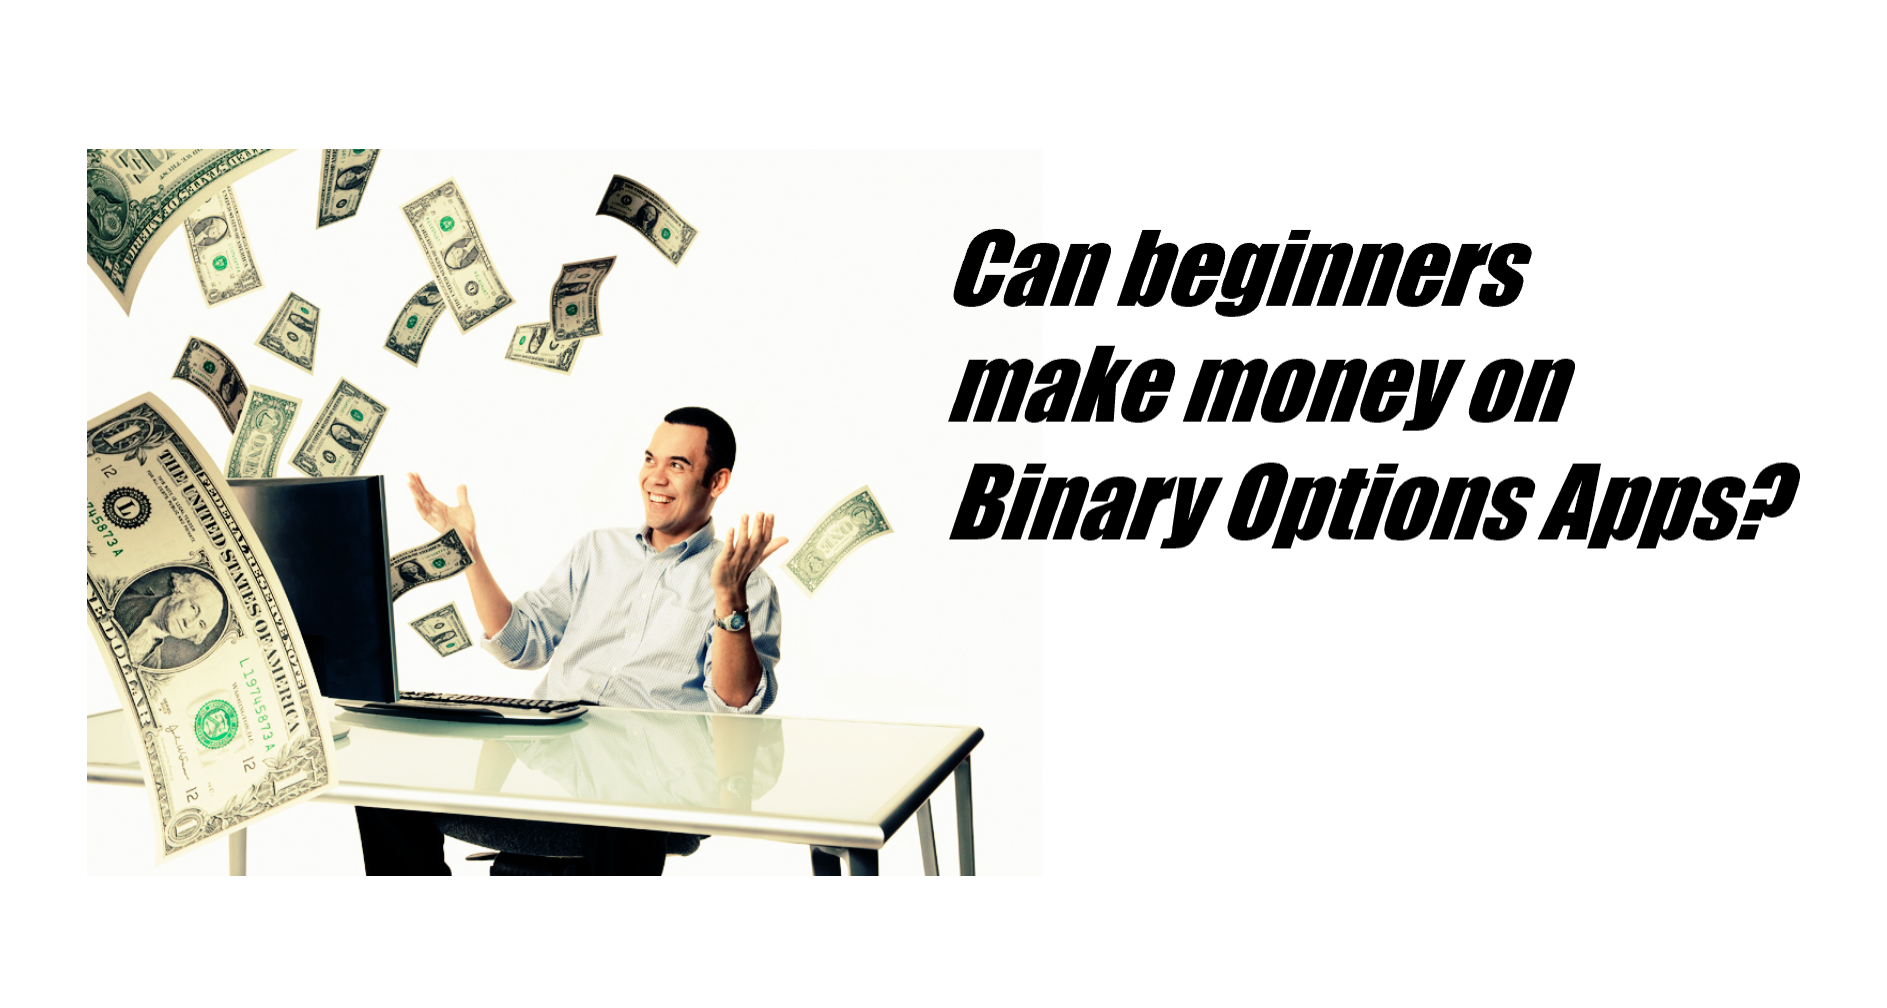 Os iniciantes podem ganhar dinheiro com aplicativos de opções binárias?